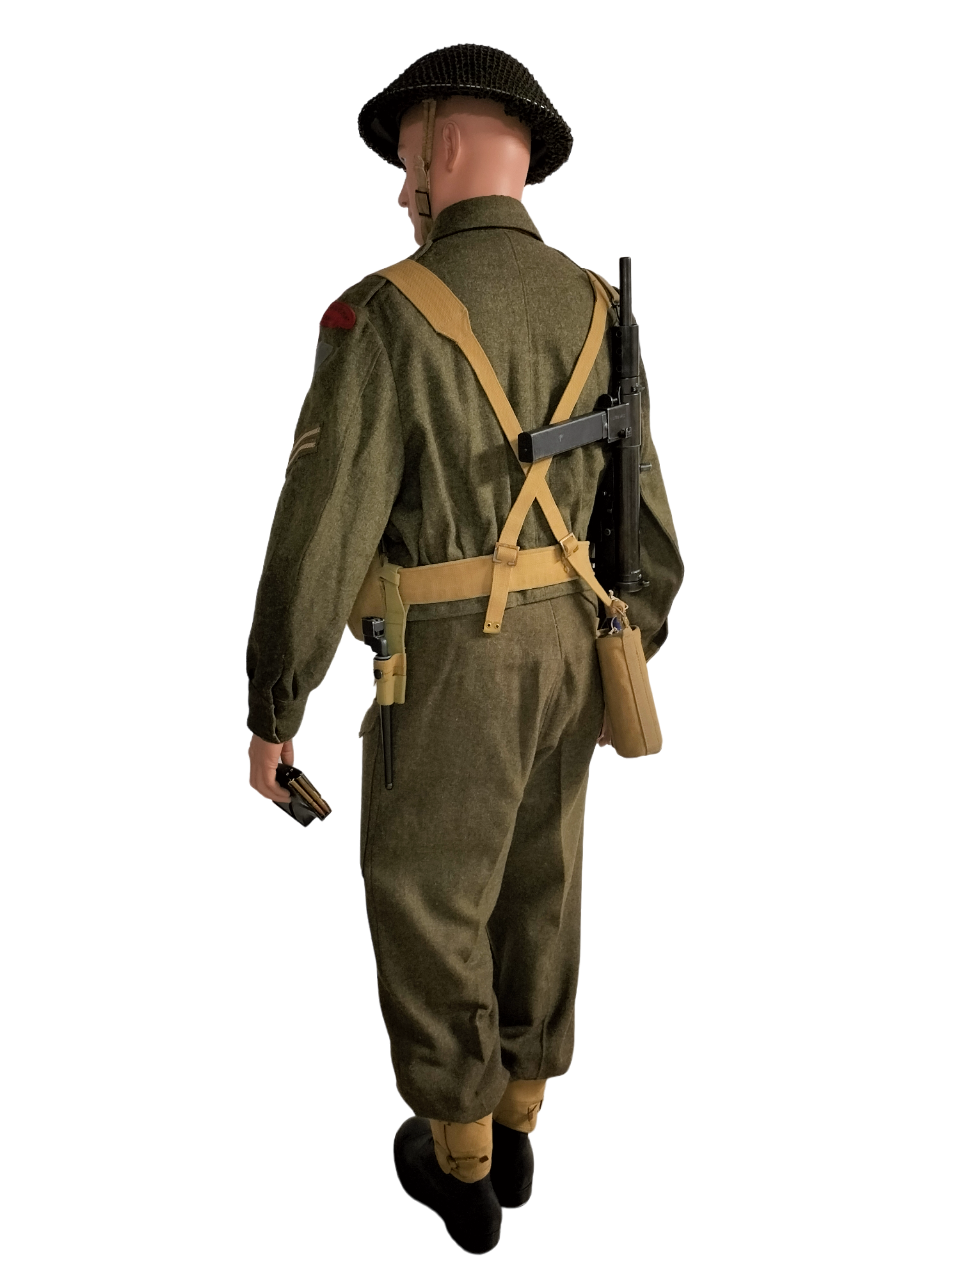 Mannequin de la 3e DI canadienne (Regina Rifle Regiment), bataille de Normandie  Img20211